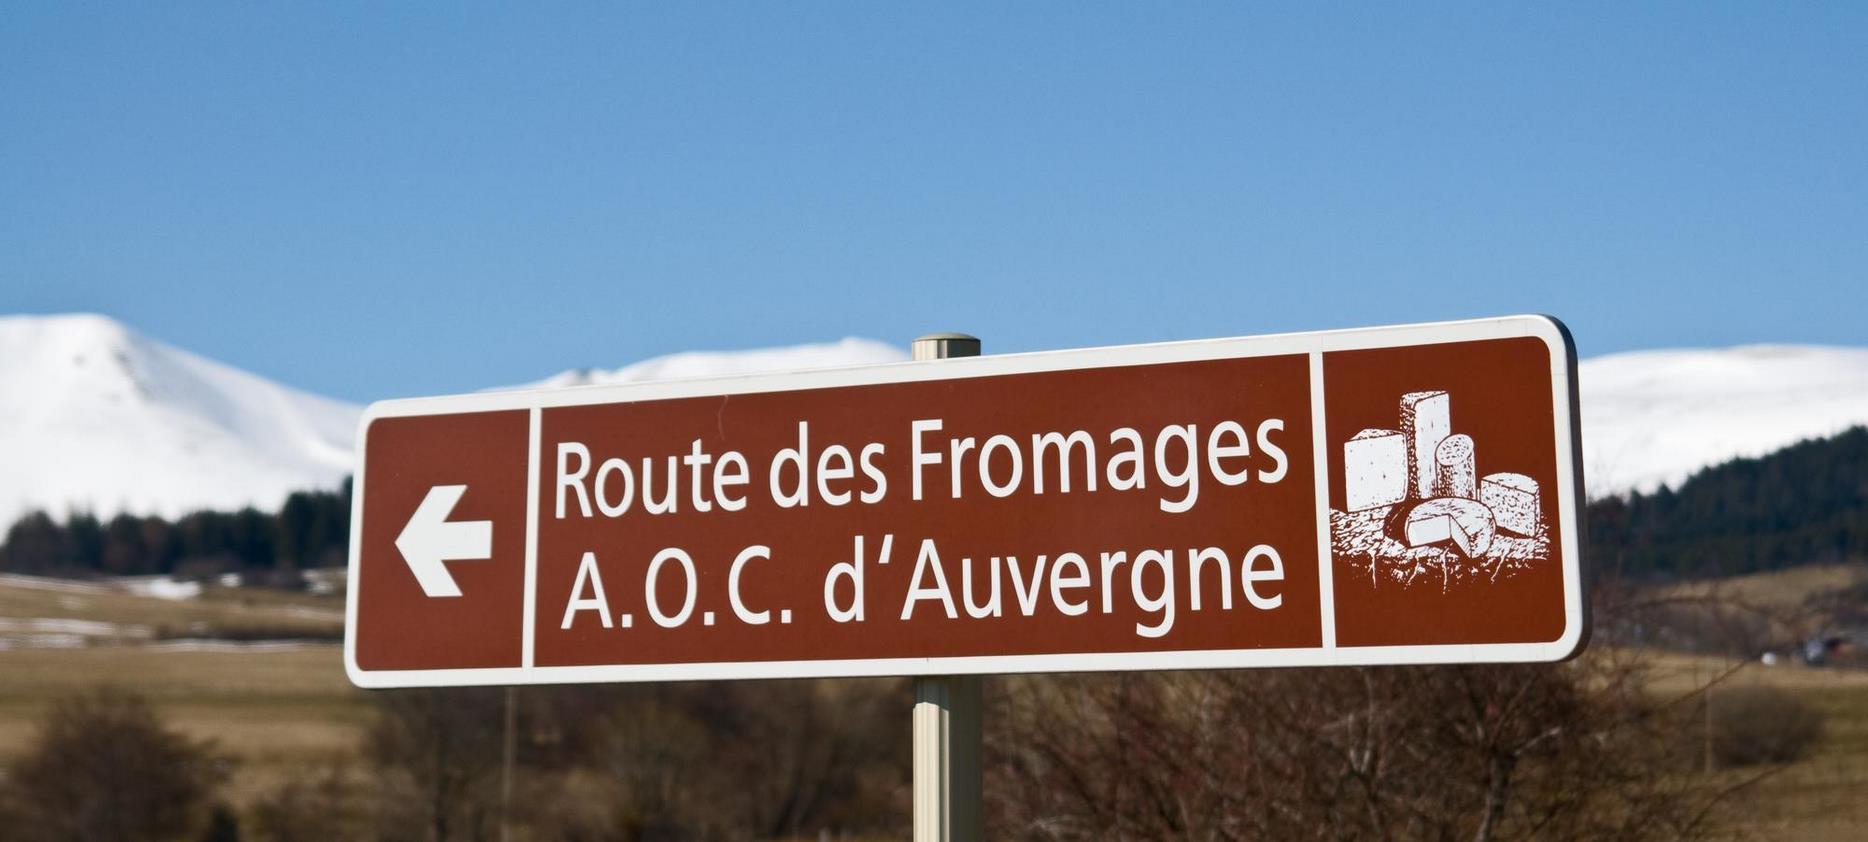 La Route des Fromages d'Auvergne